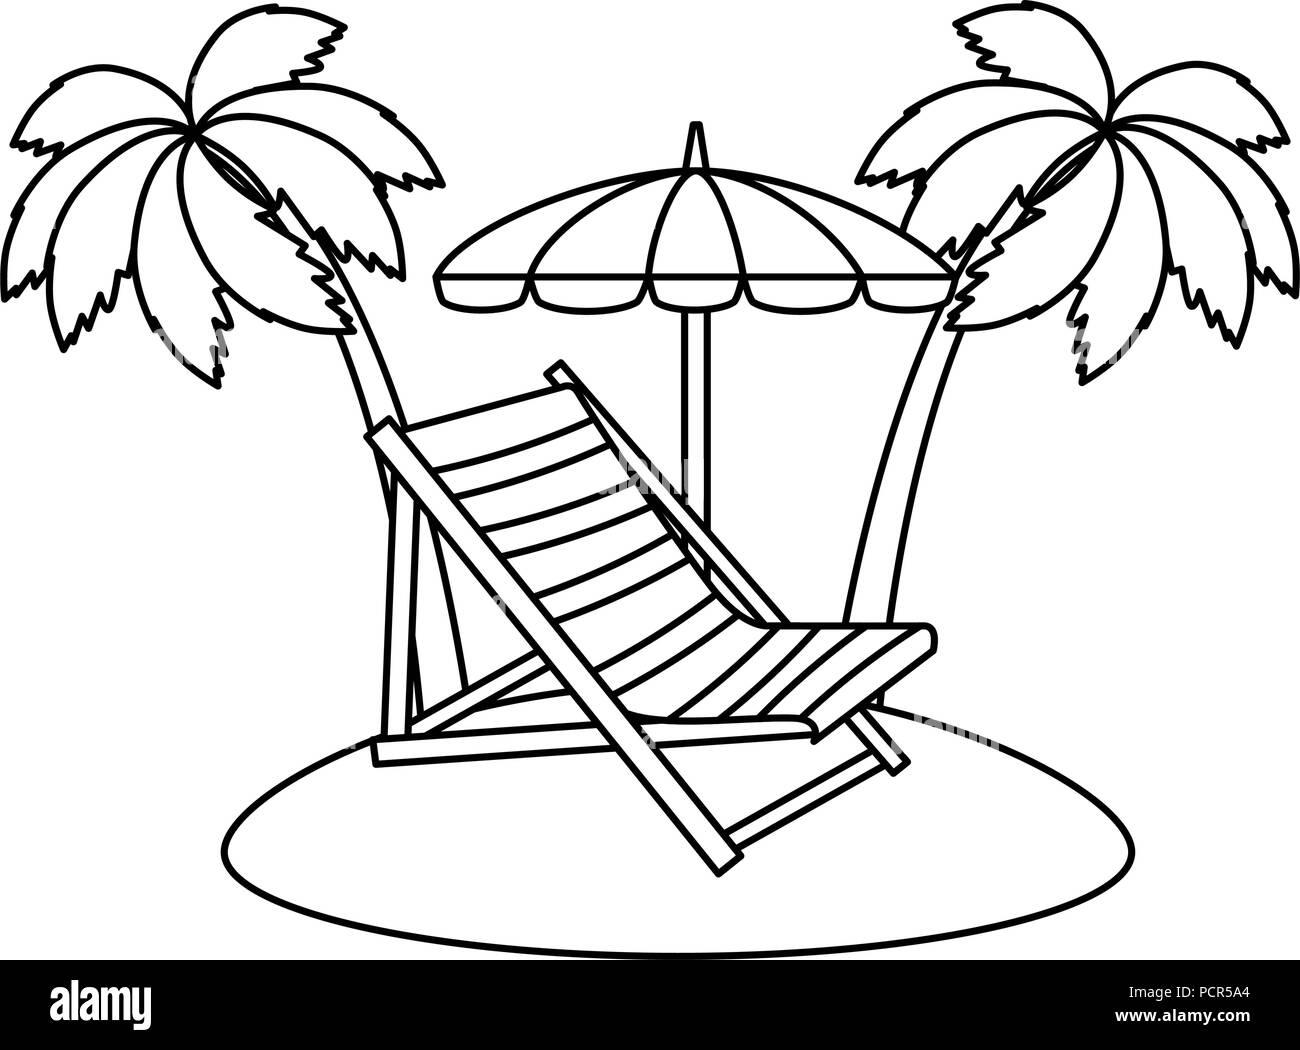 Liegestuhl mit Sonnenschirm und Palmen Stock-Vektorgrafik - Alamy